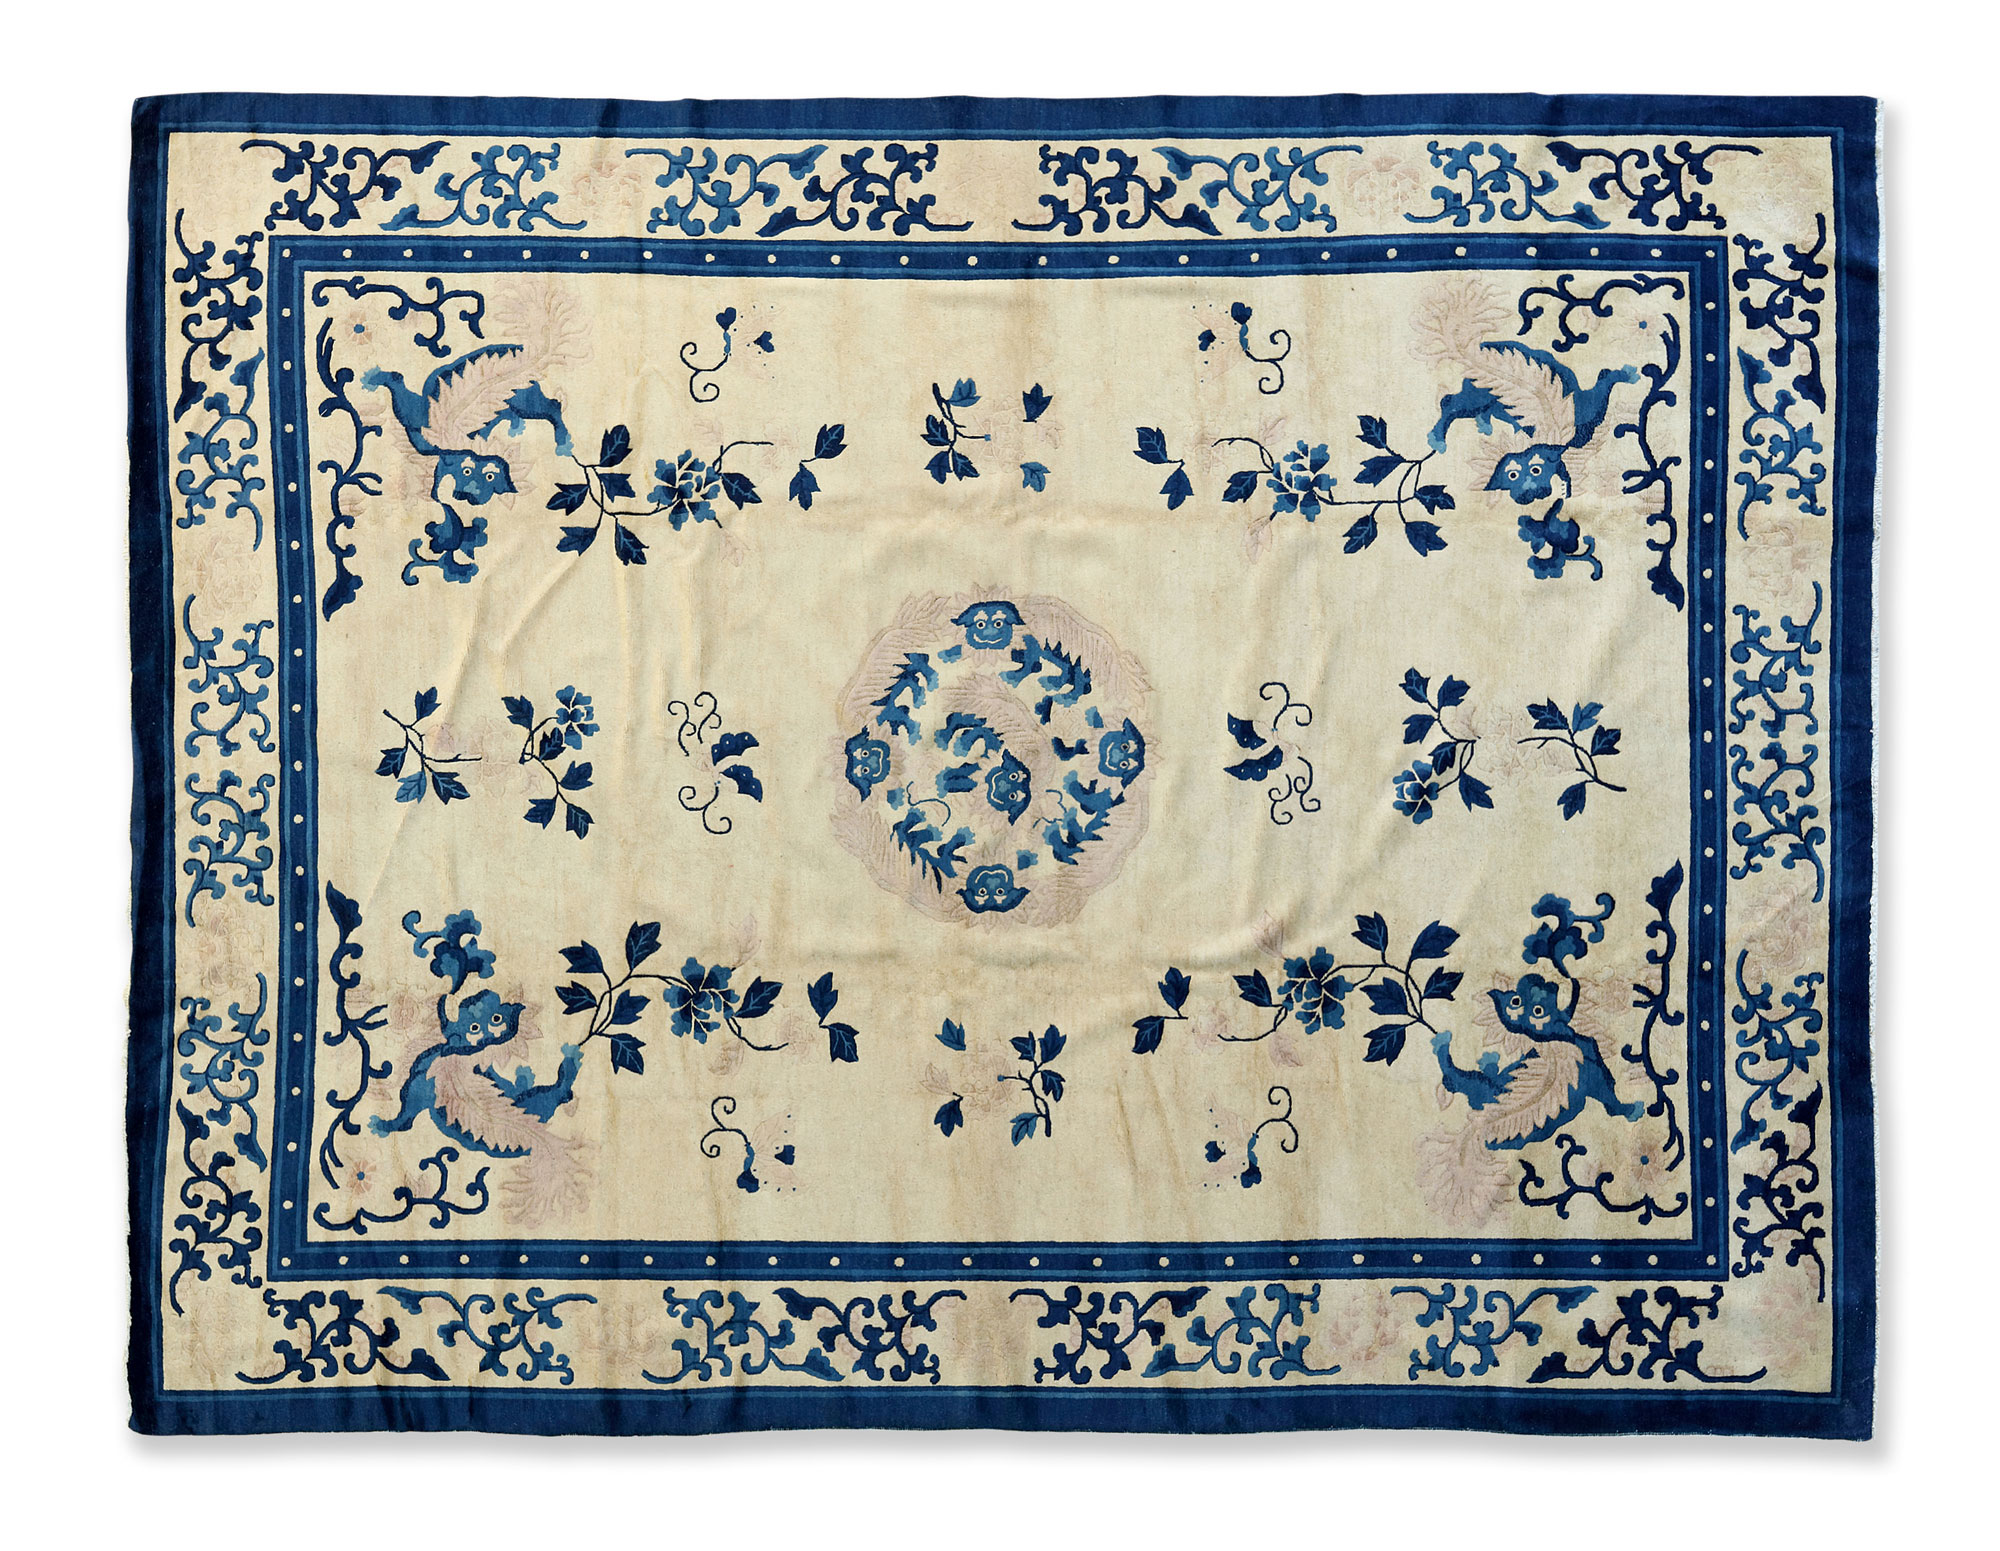 古代地毯花纹图片